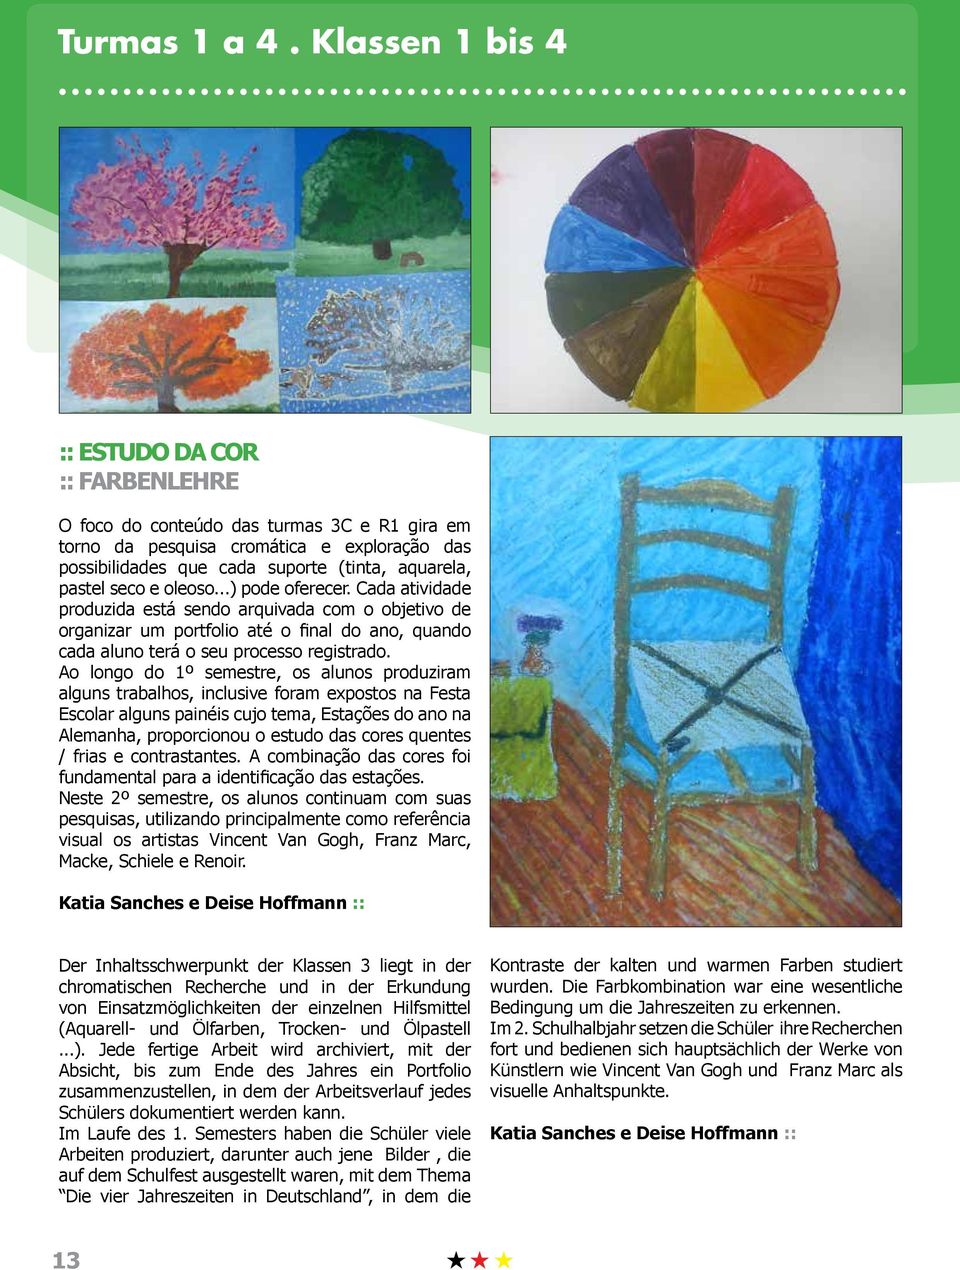 Ao longo do 1º semestre, os alunos produziram alguns trabalhos, inclusive foram expostos na Festa Escolar alguns painéis cujo tema, Estações do ano na Alemanha, proporcionou o estudo das cores